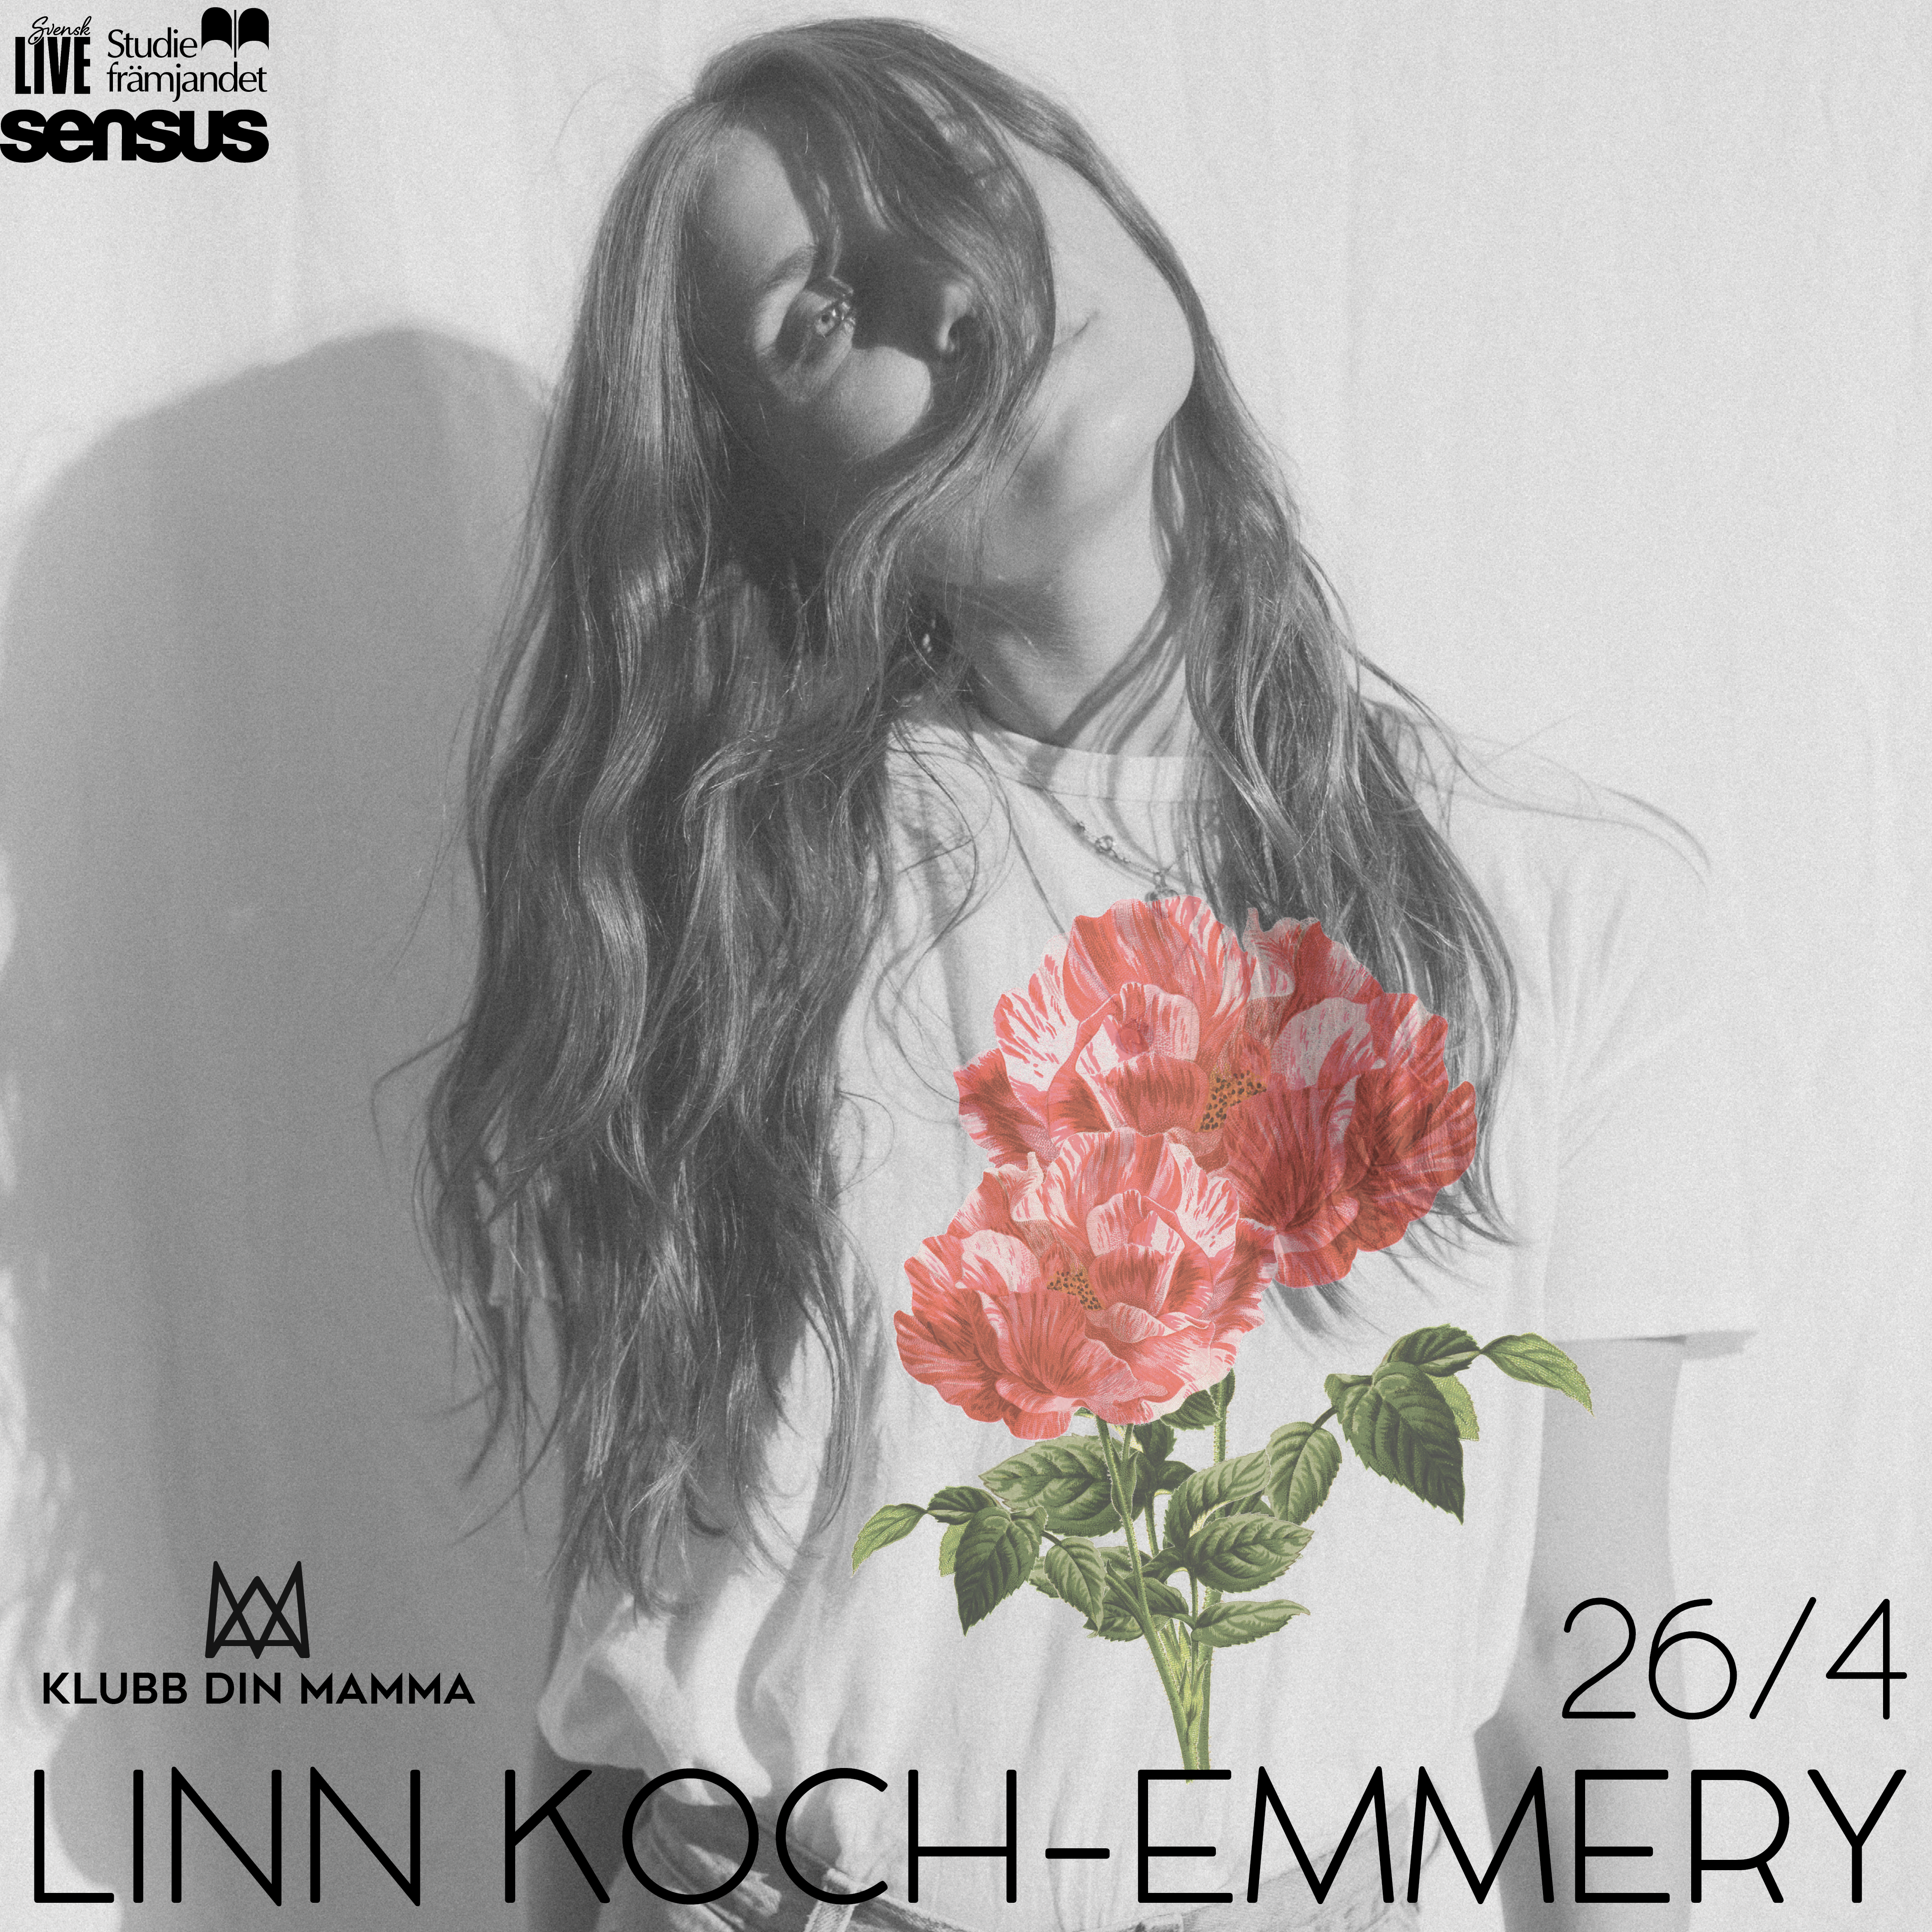 Linn Koch-Emmery - 26 april